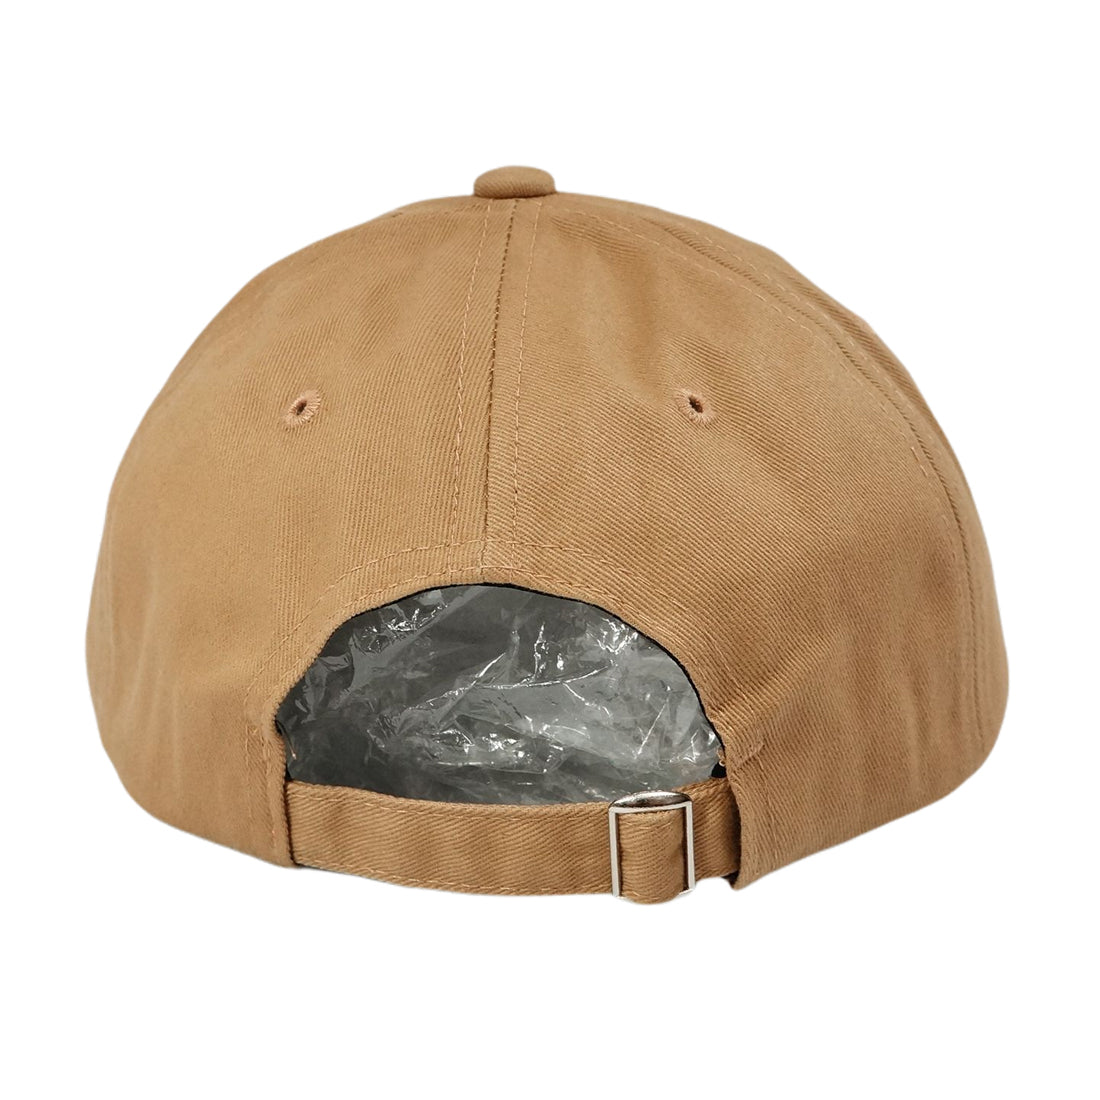 帽子 キャップ CAP メンズ レディース ロゴ NATURAL刺繍 ベースボールキャップ コットン 春 夏 秋 冬